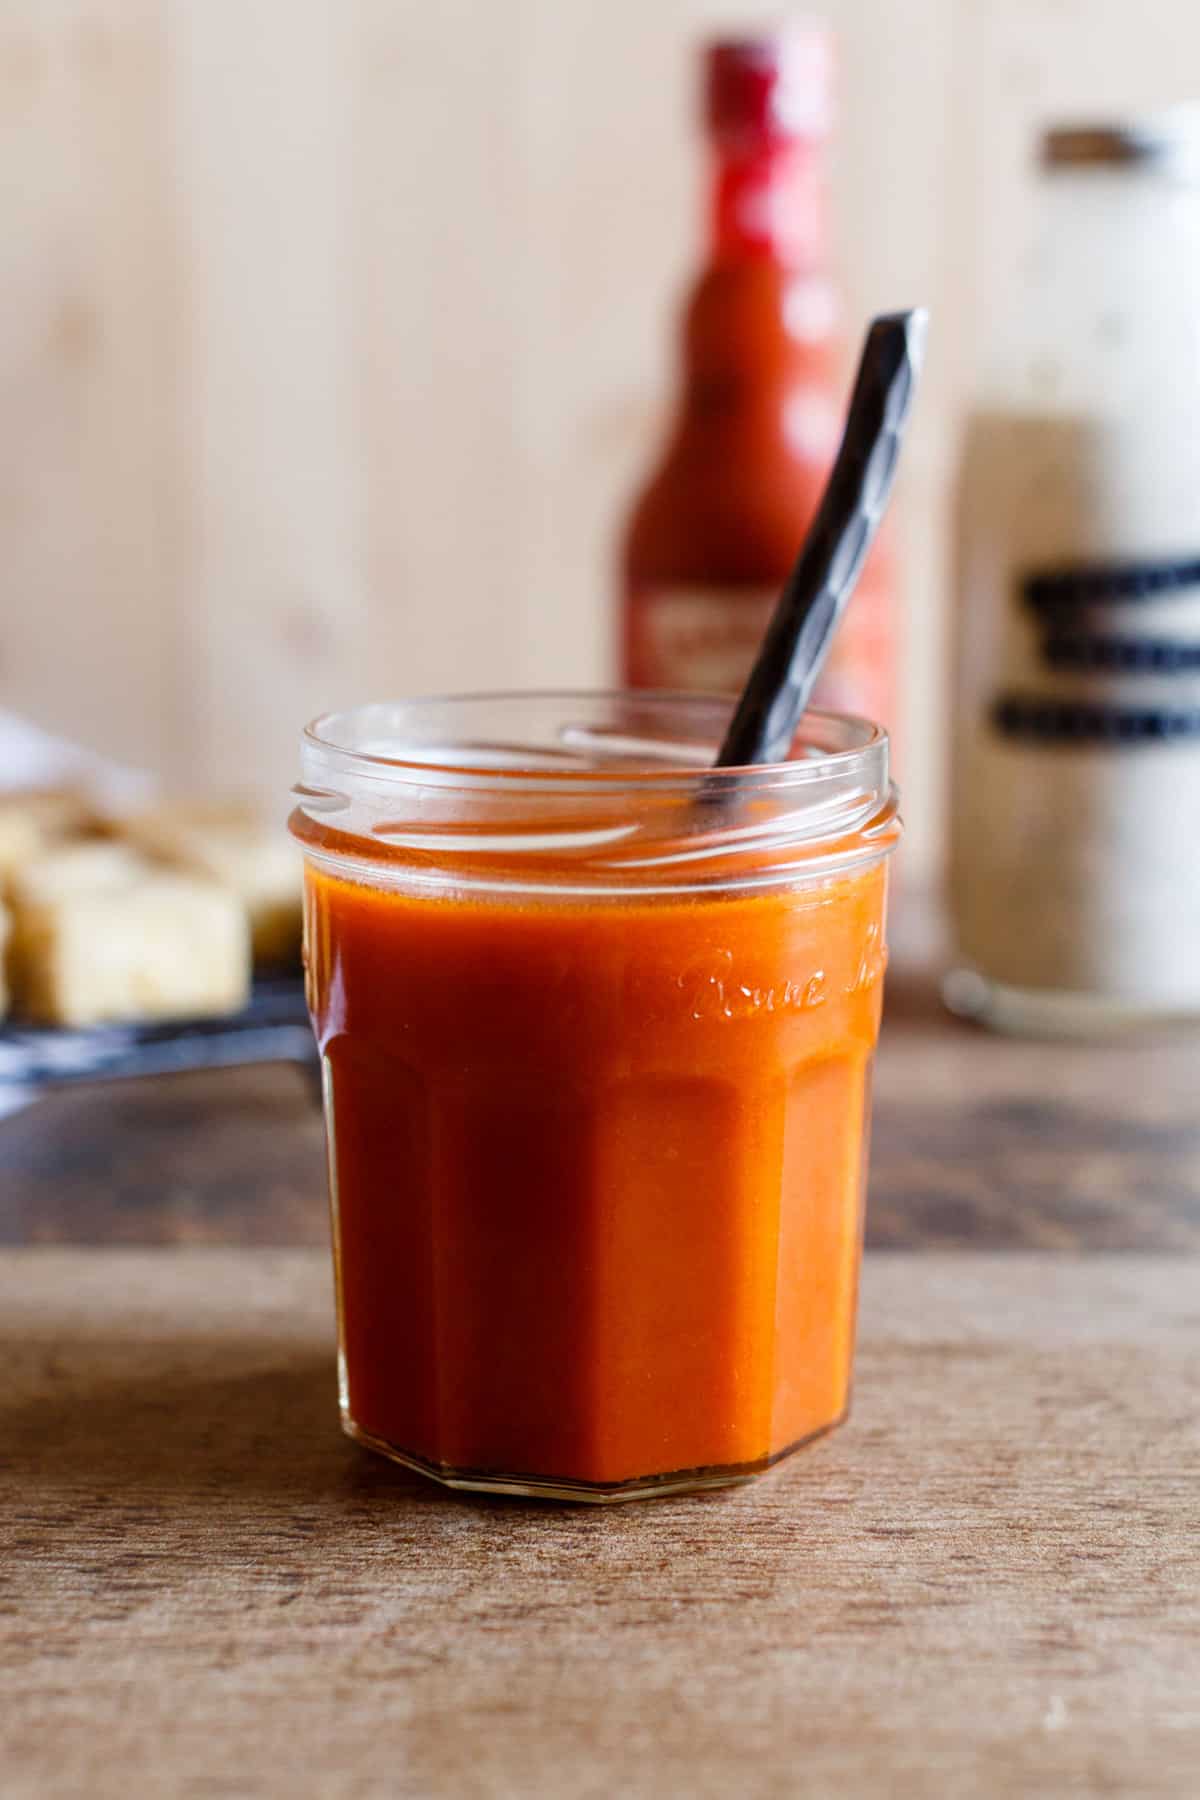 Jar of homemade Vegan Spicy Buffalo Sauce.